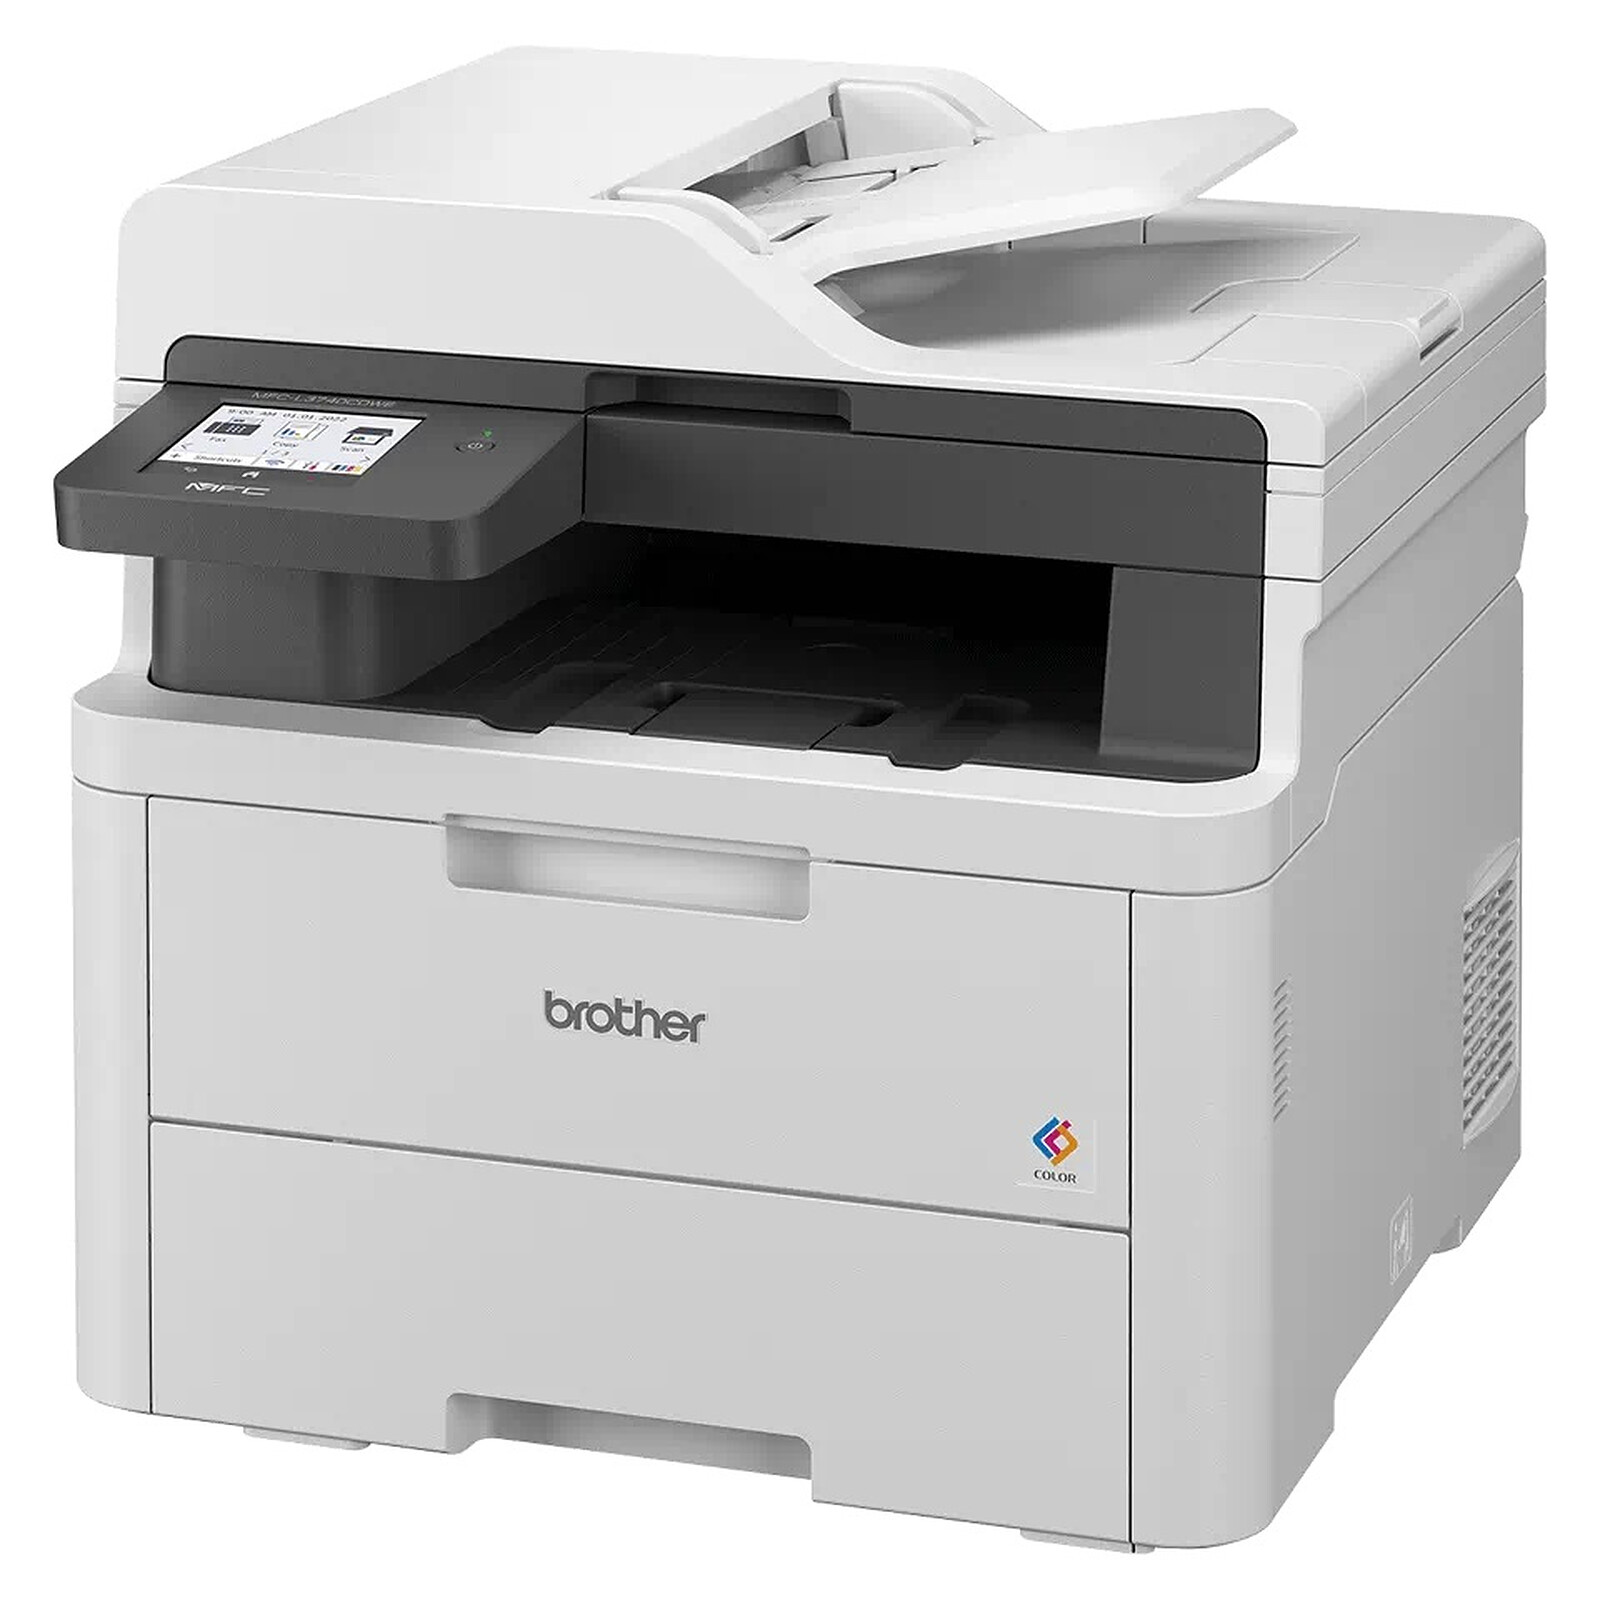 Brother MFC-L3770CDW, impresora láser con copiadora y escáner a